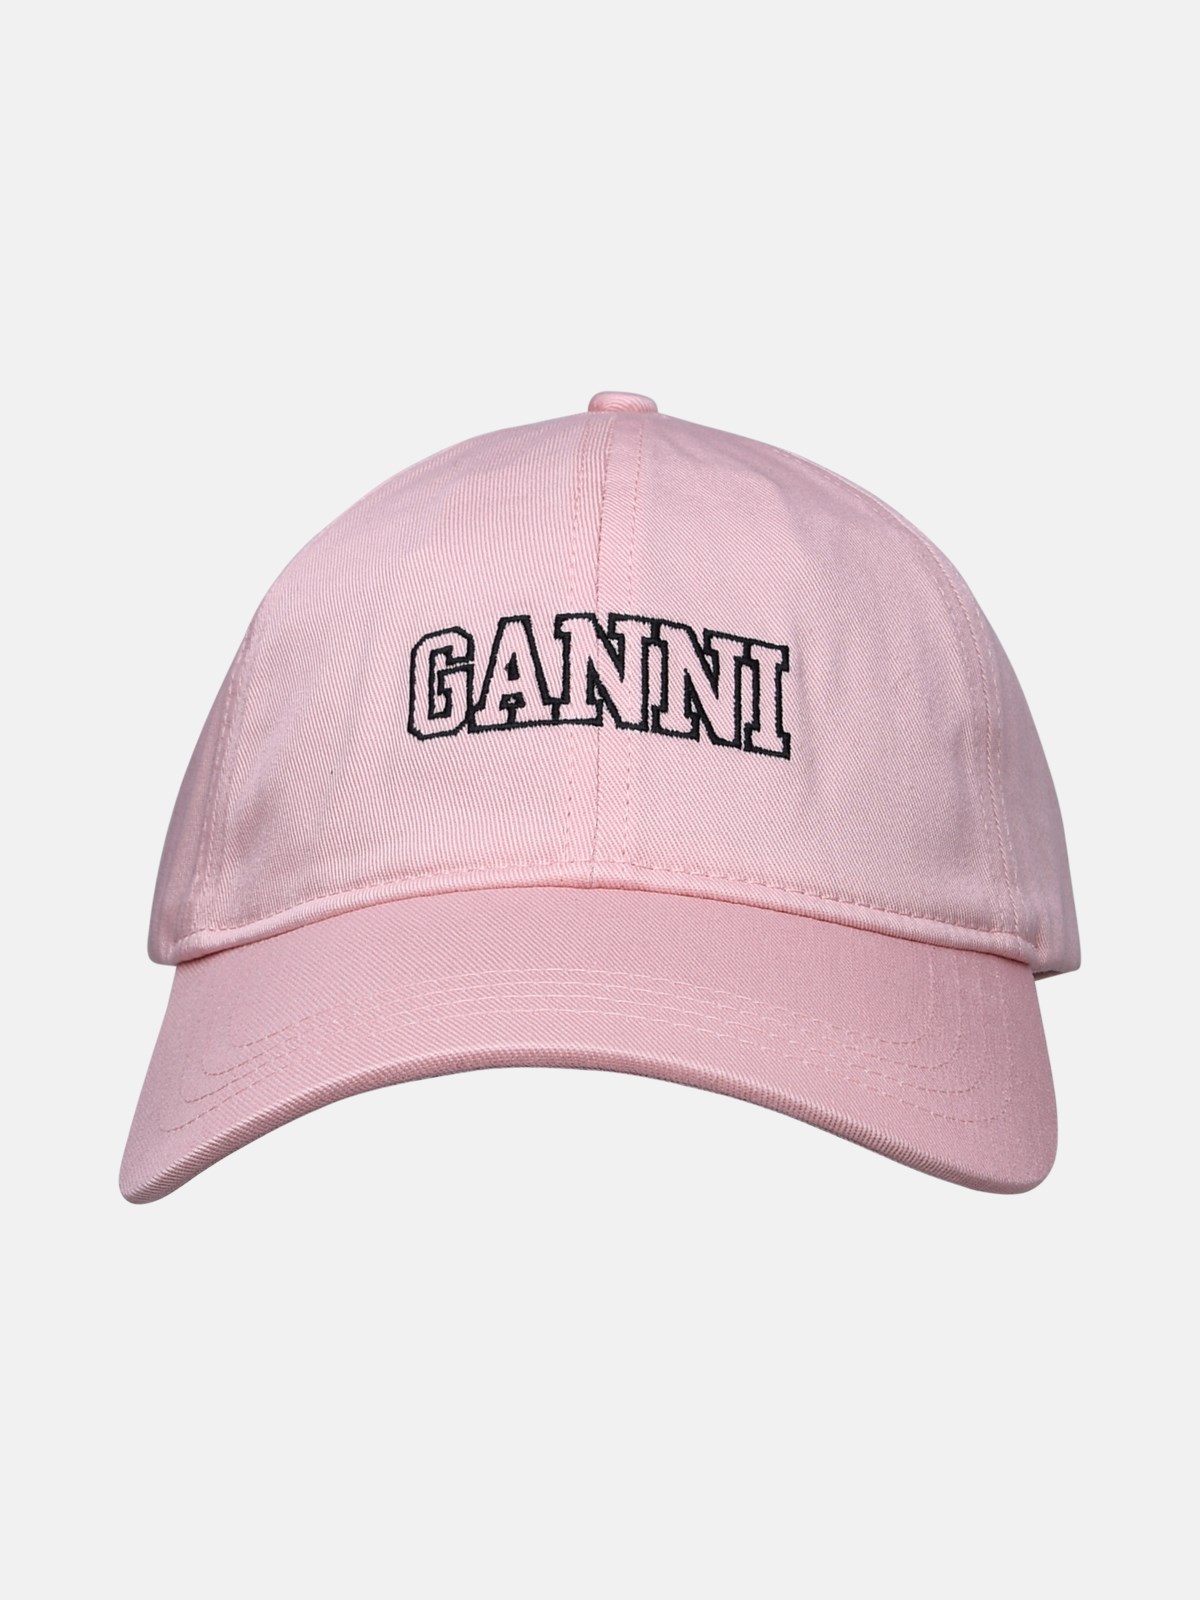 Ganni Pink Cotton Hat